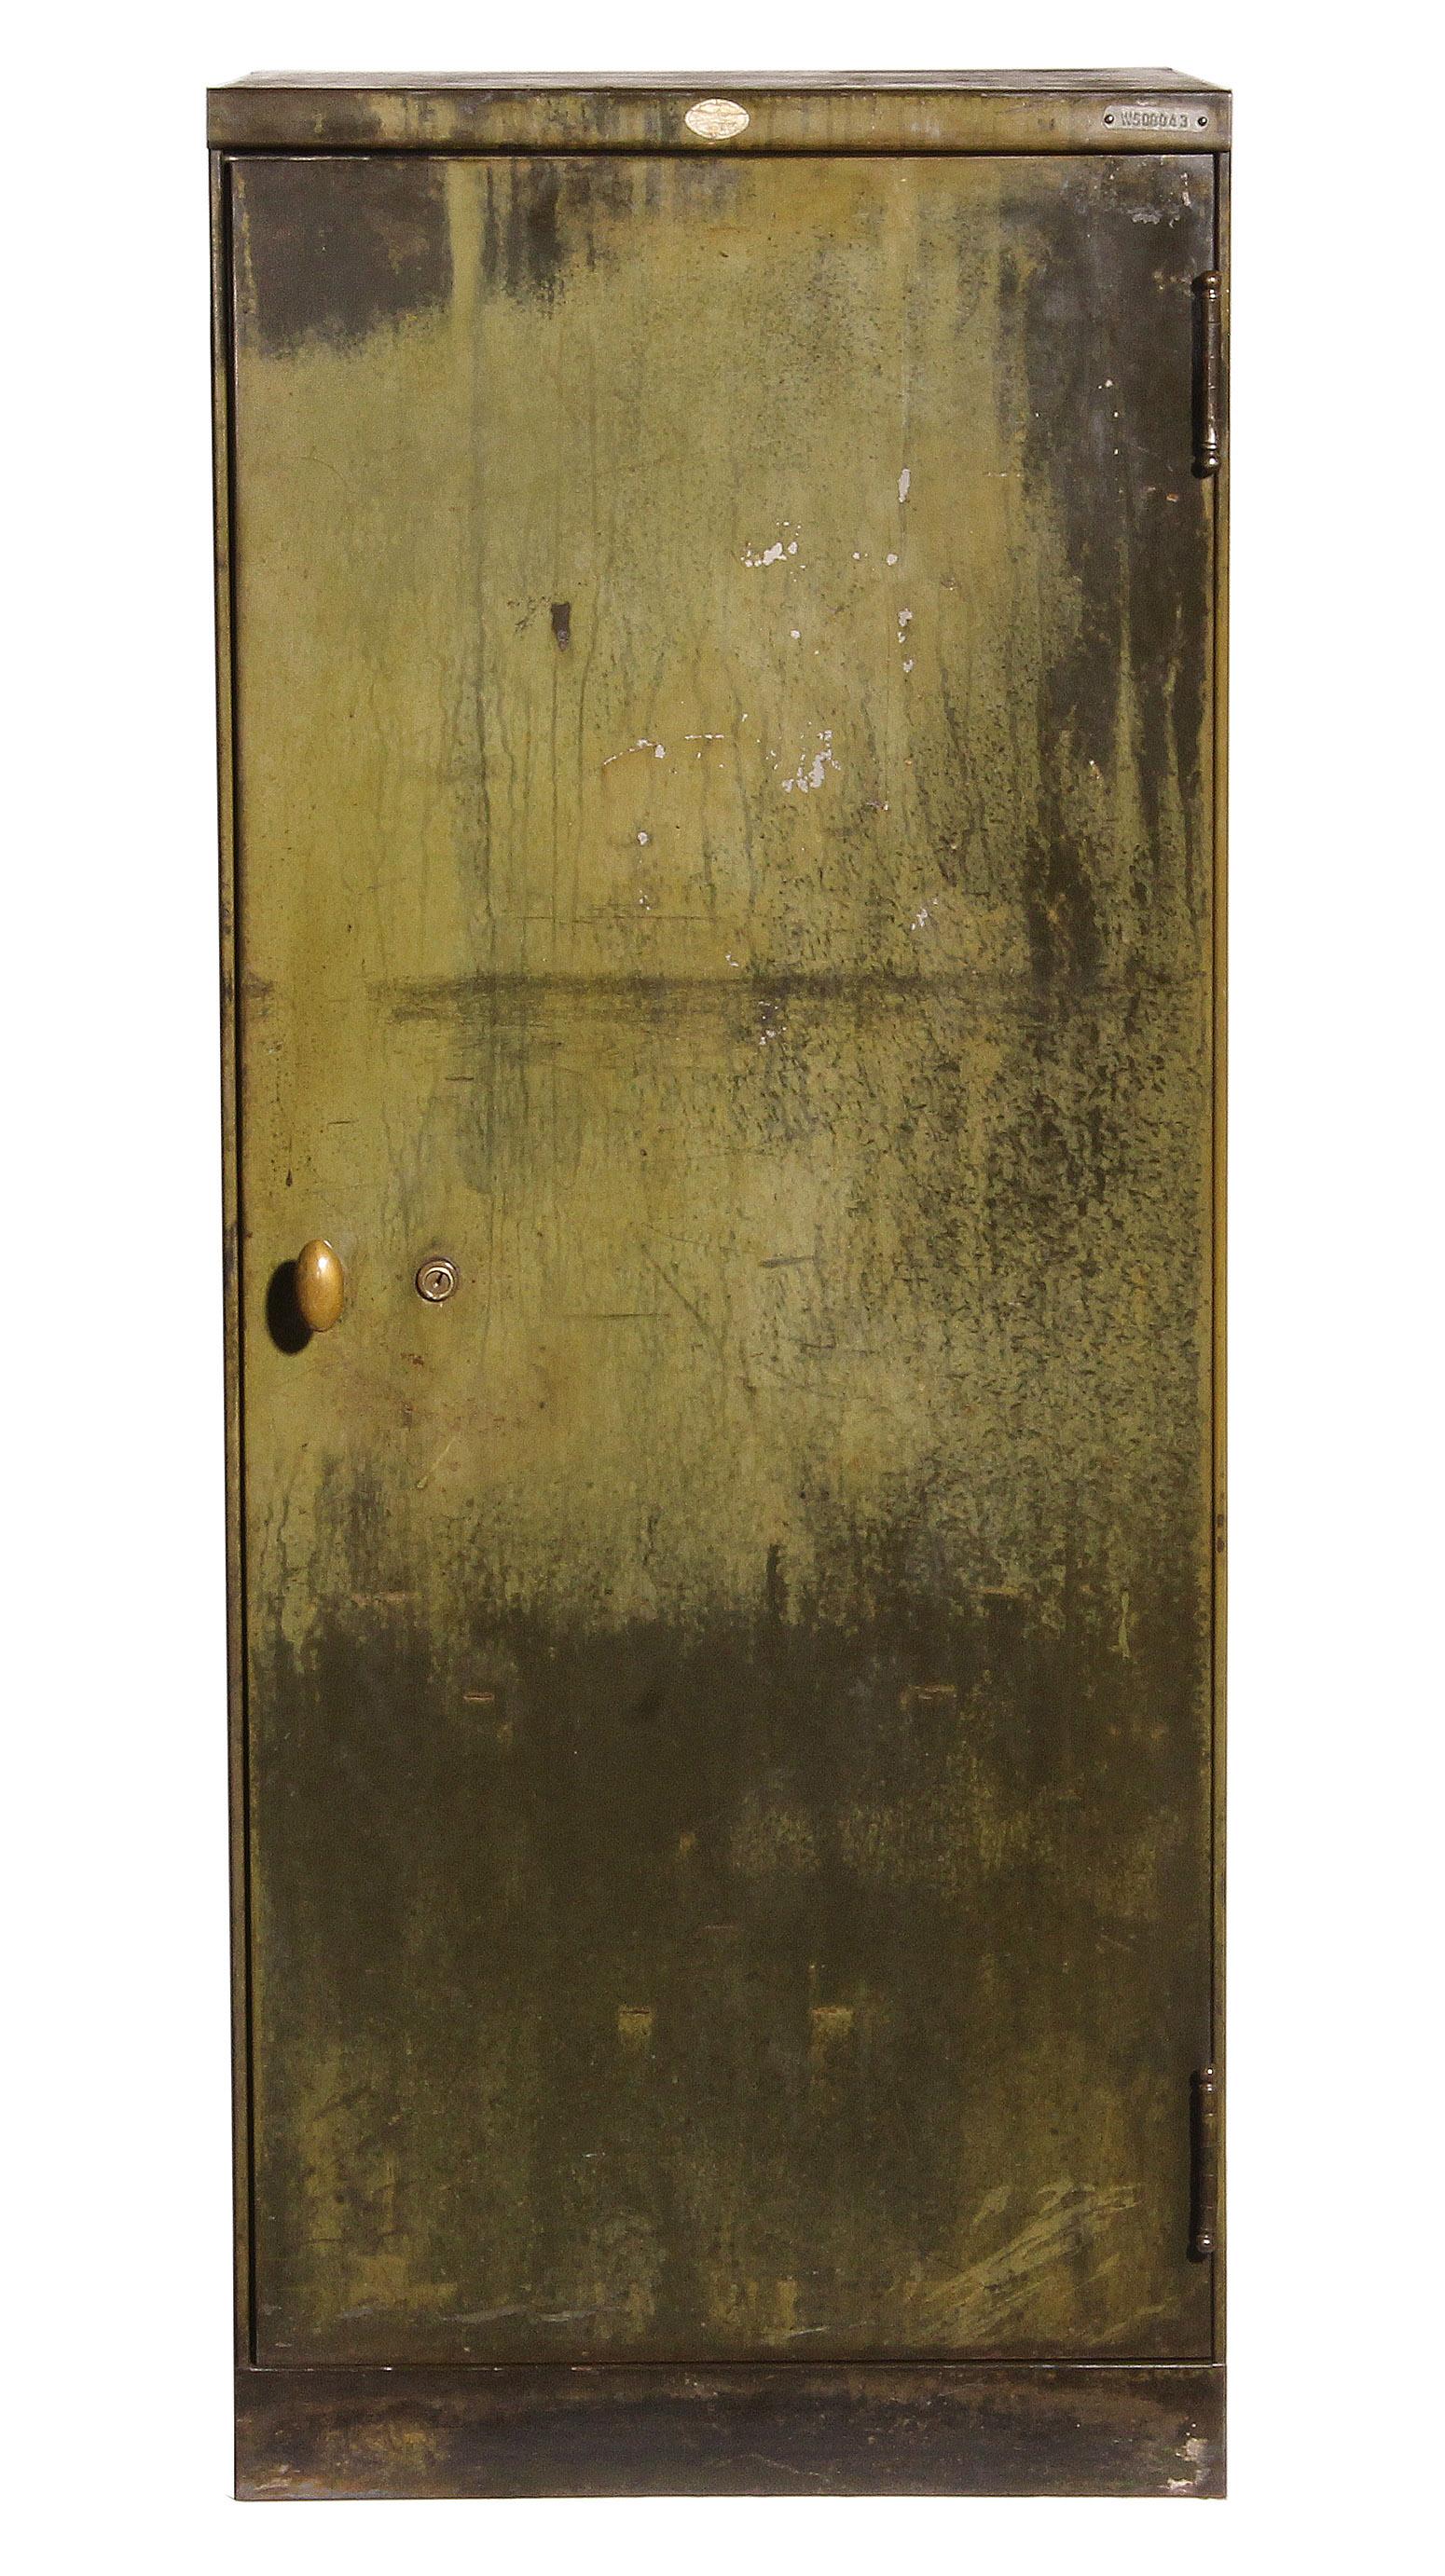 Vintage Industrial distressed green steel cabinet.